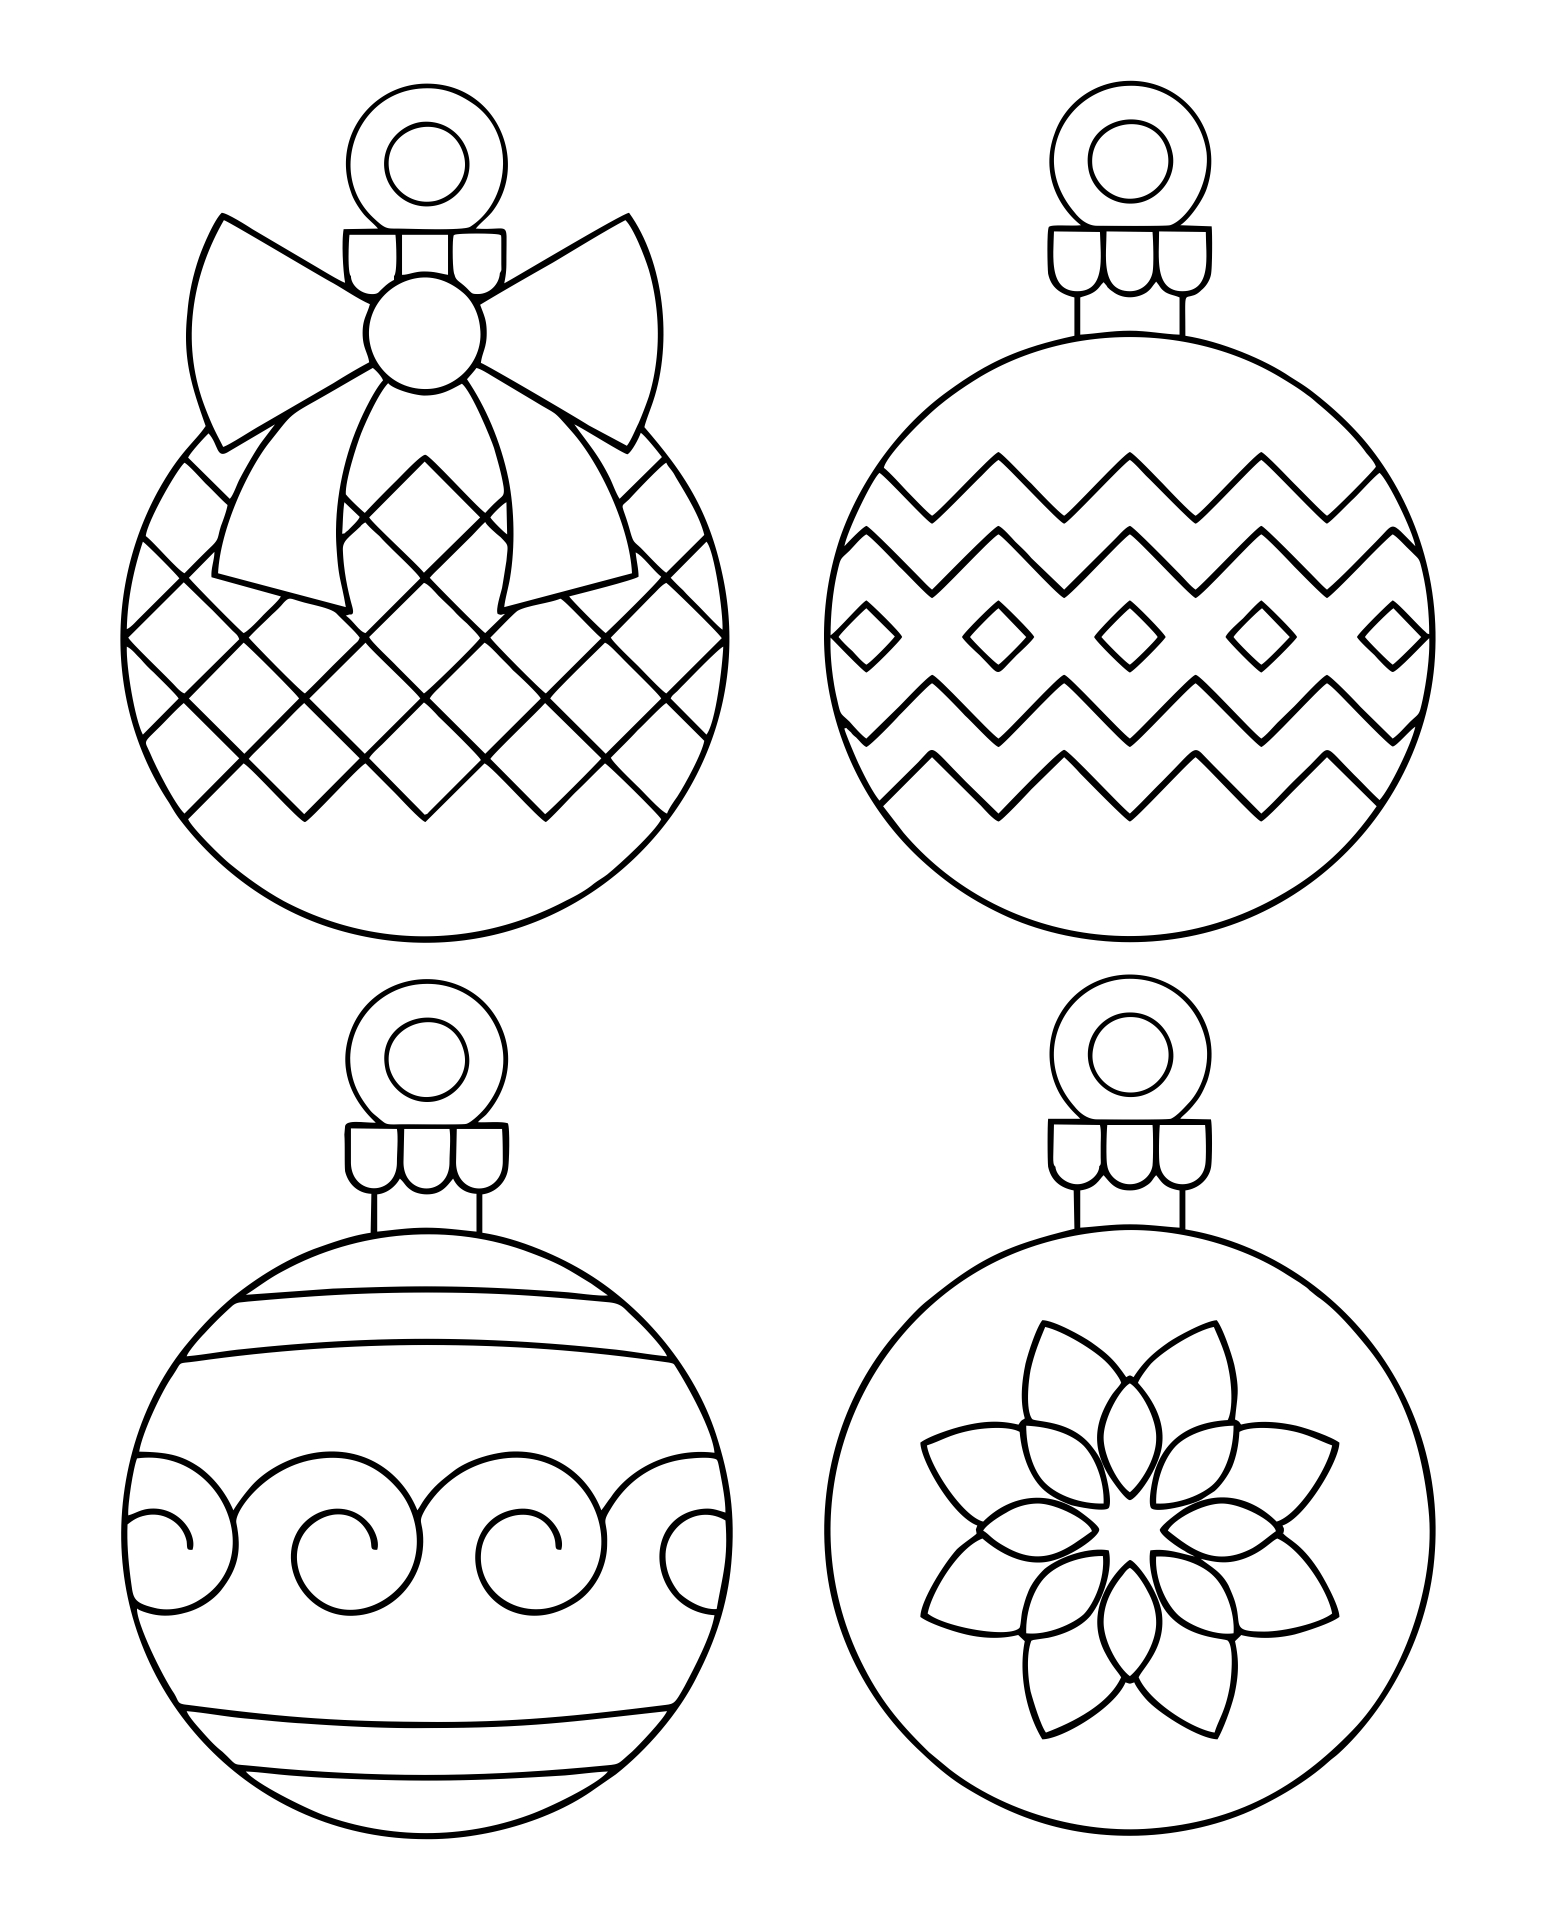 Printable Christmas Ornaments Templates